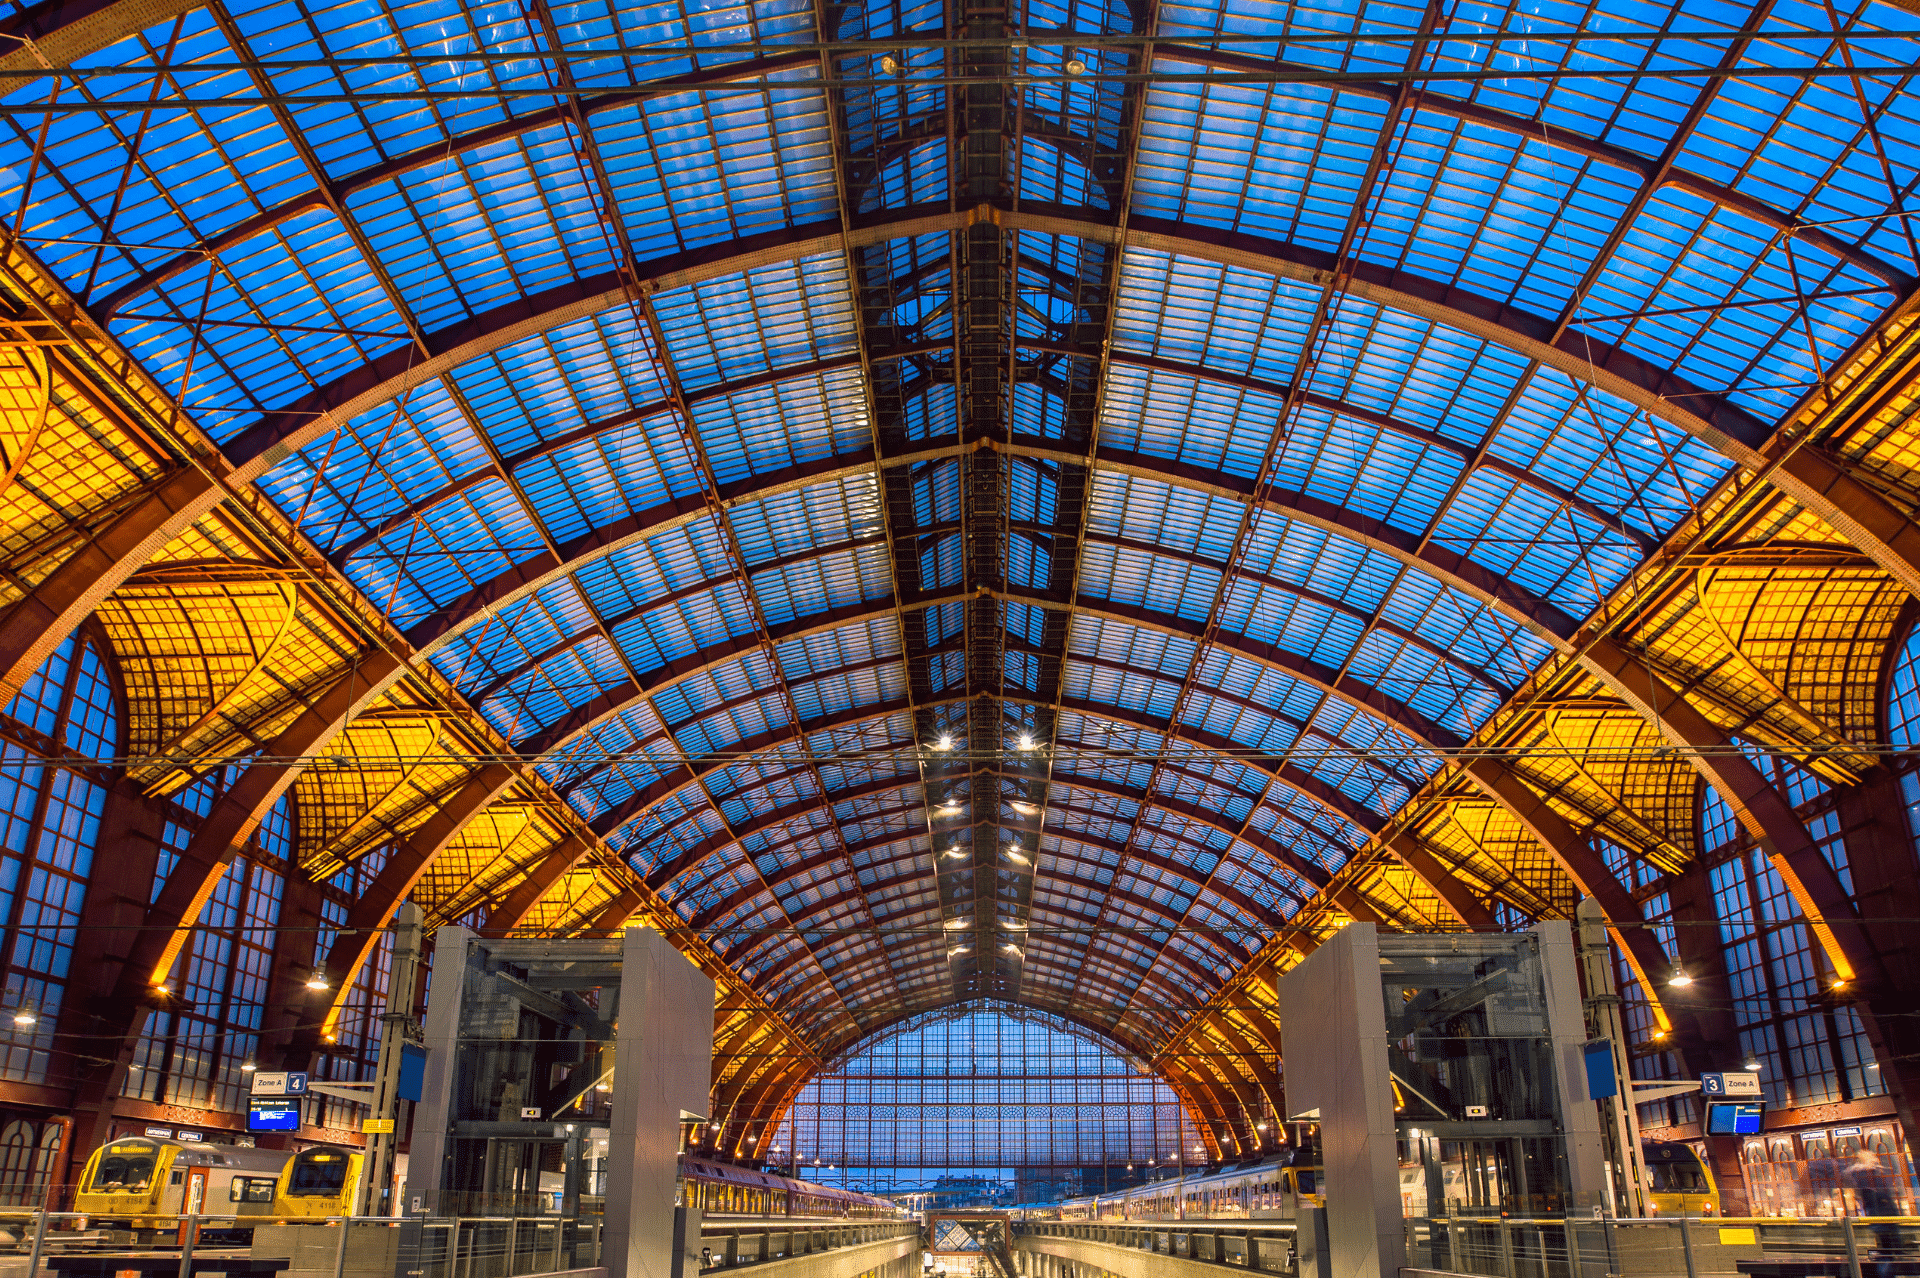 Antwerp Train Station